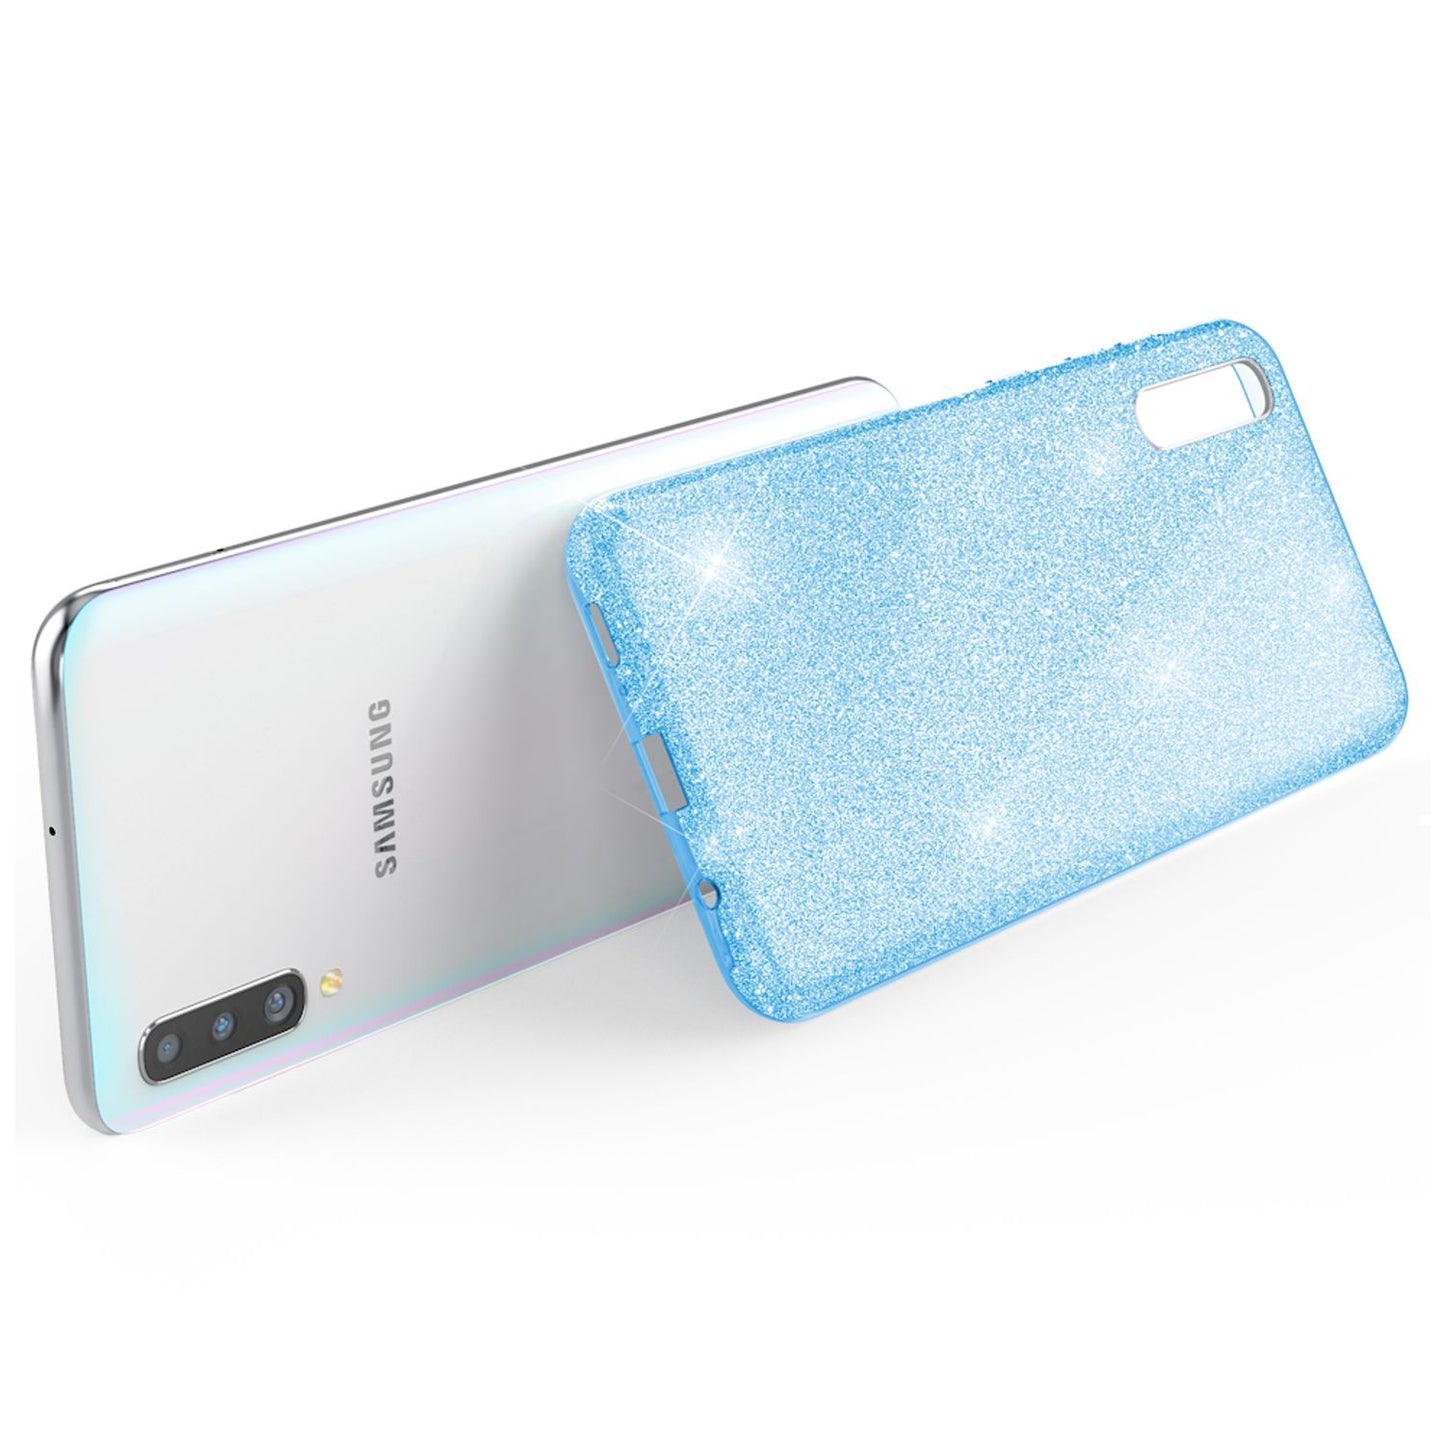 NALIA Glitzer Handyhülle für Samsung Galaxy A50, Diamant Schutzhülle Glitzer Handyhülle